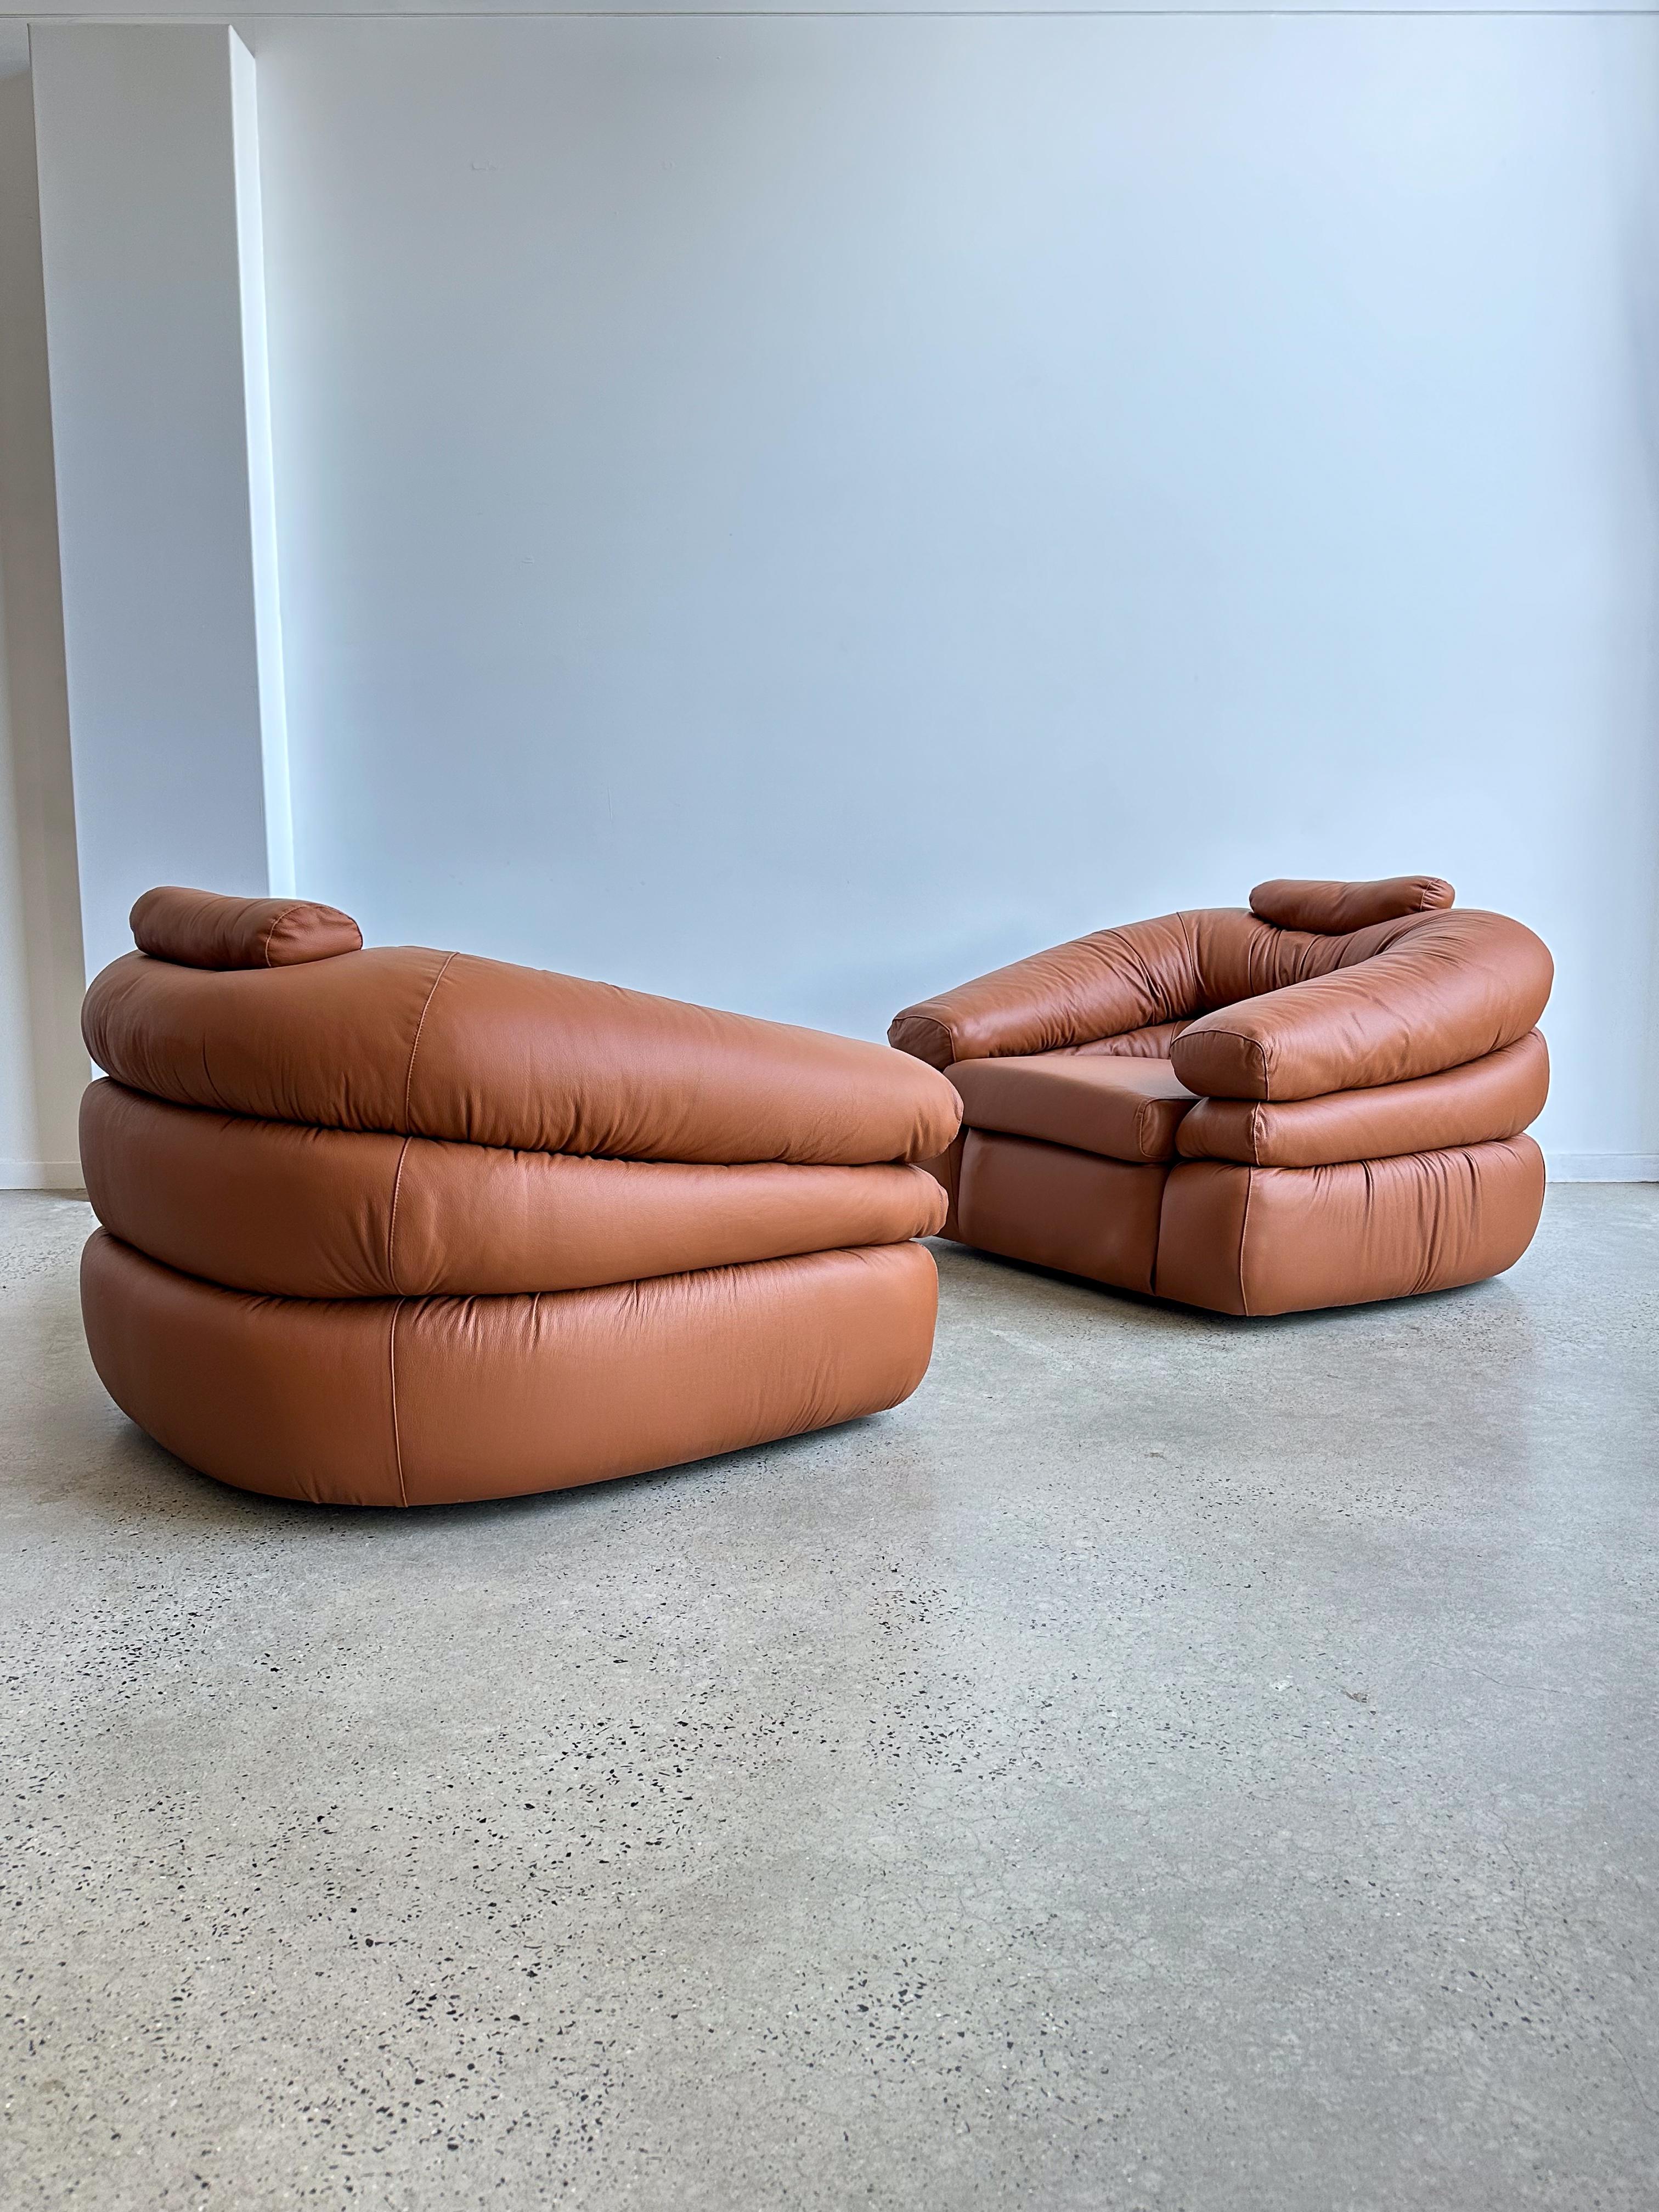 Diese atemberaubende seltene zwei Sessel Leder wurden 1968 von Design Team De Pas , Donato d'Urbino und Paolo Lomazzi entworfen. Sie schufen eines der ikonischsten Objekte der italienischen Designgeschichte. Dieses Modell namens 